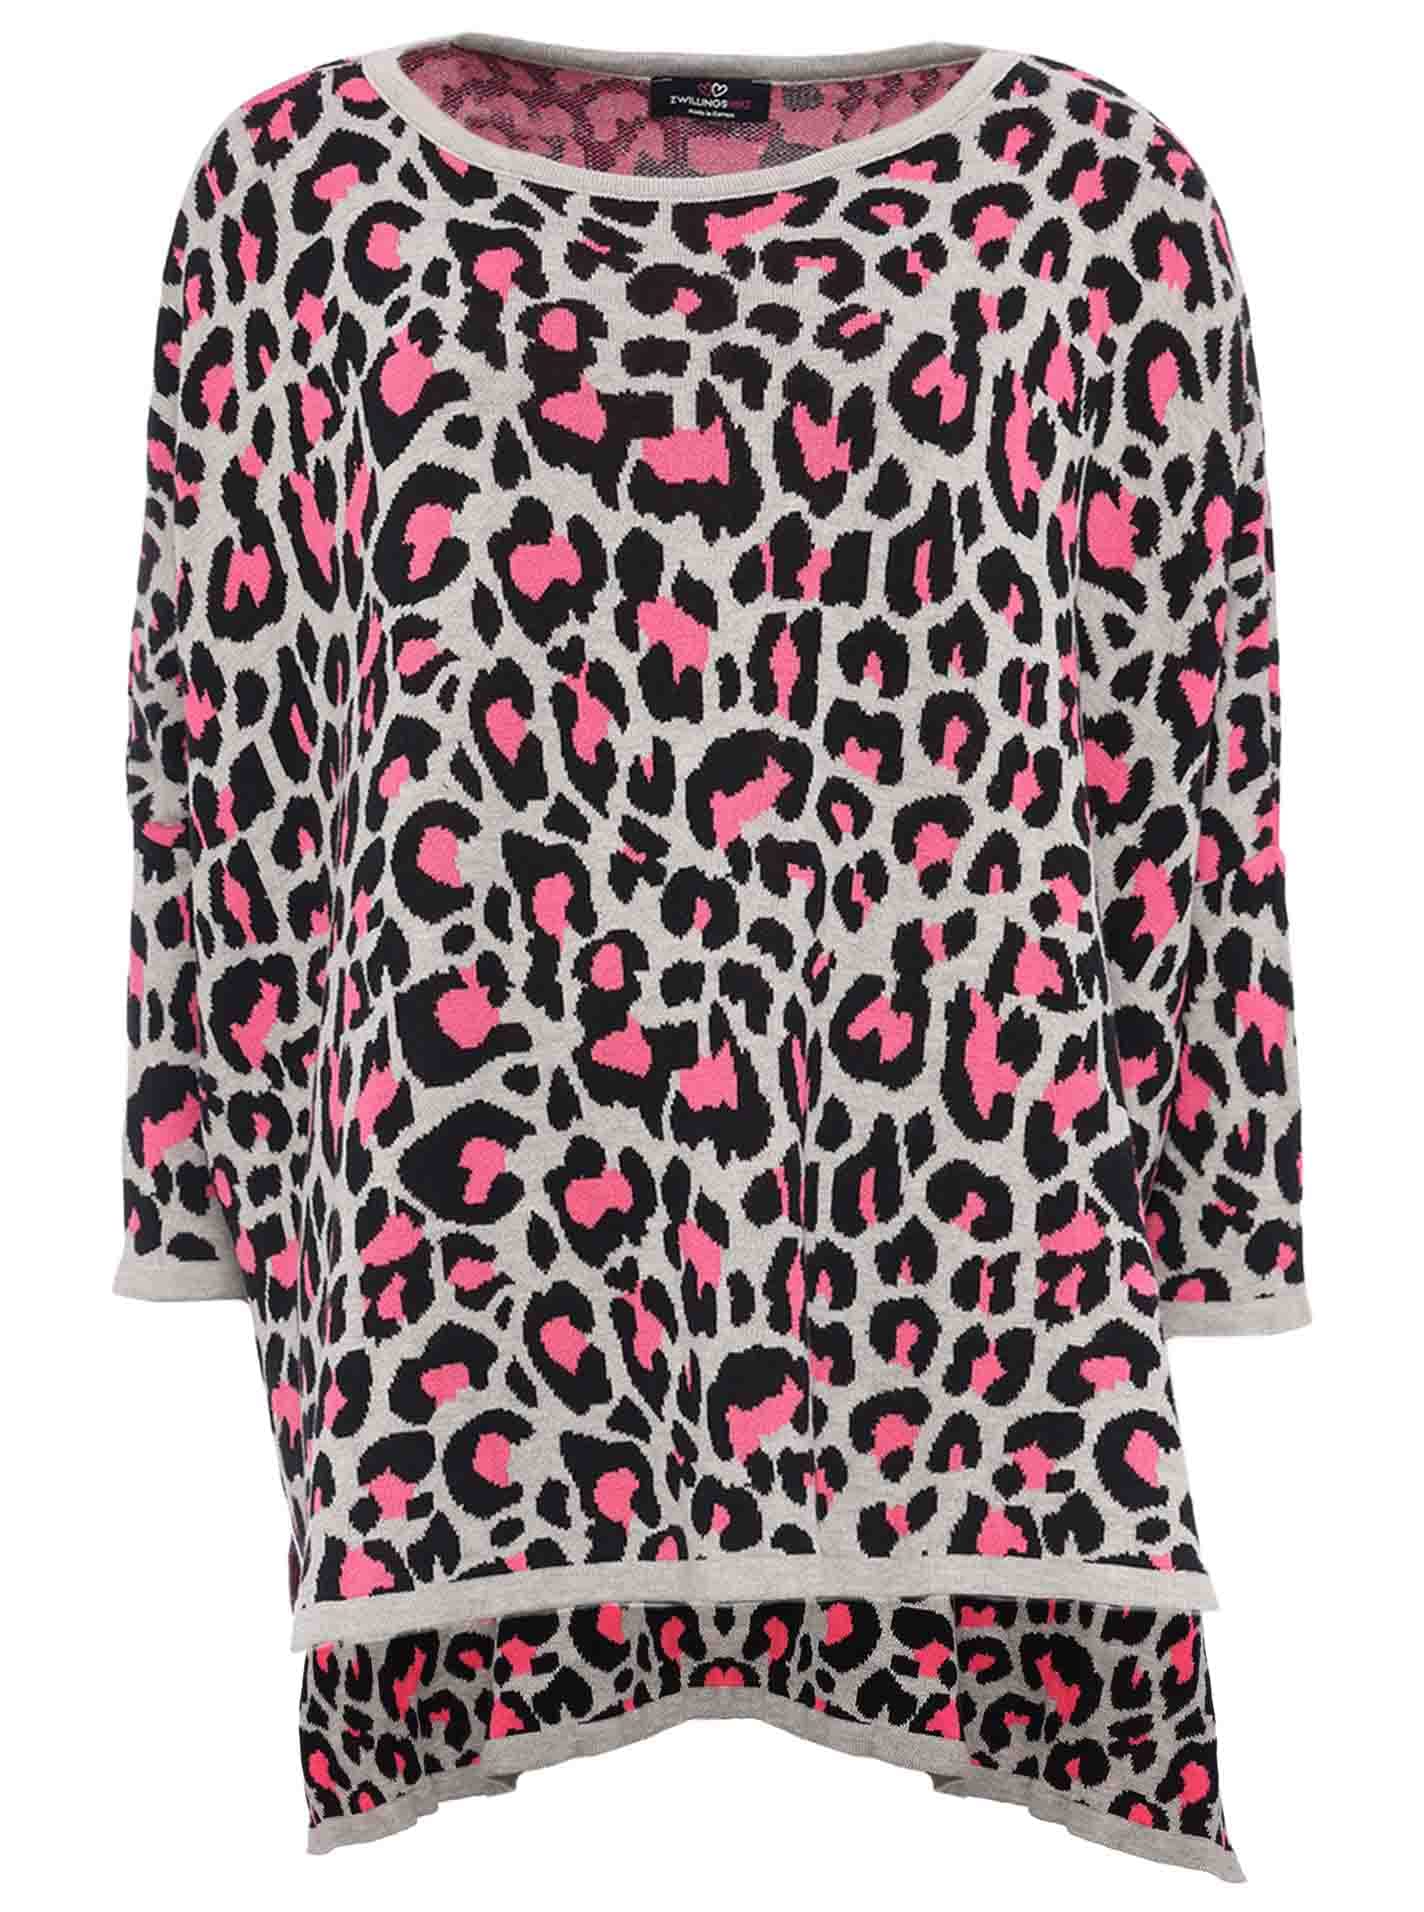 Zwillingsherz Poncho mit Baumwolle im Leo Design - Hochwertiges Cape für Damen - XXL Umhängetuch und Tunika - Strick-Pullover - Sweatshirt - Stola - grau pink